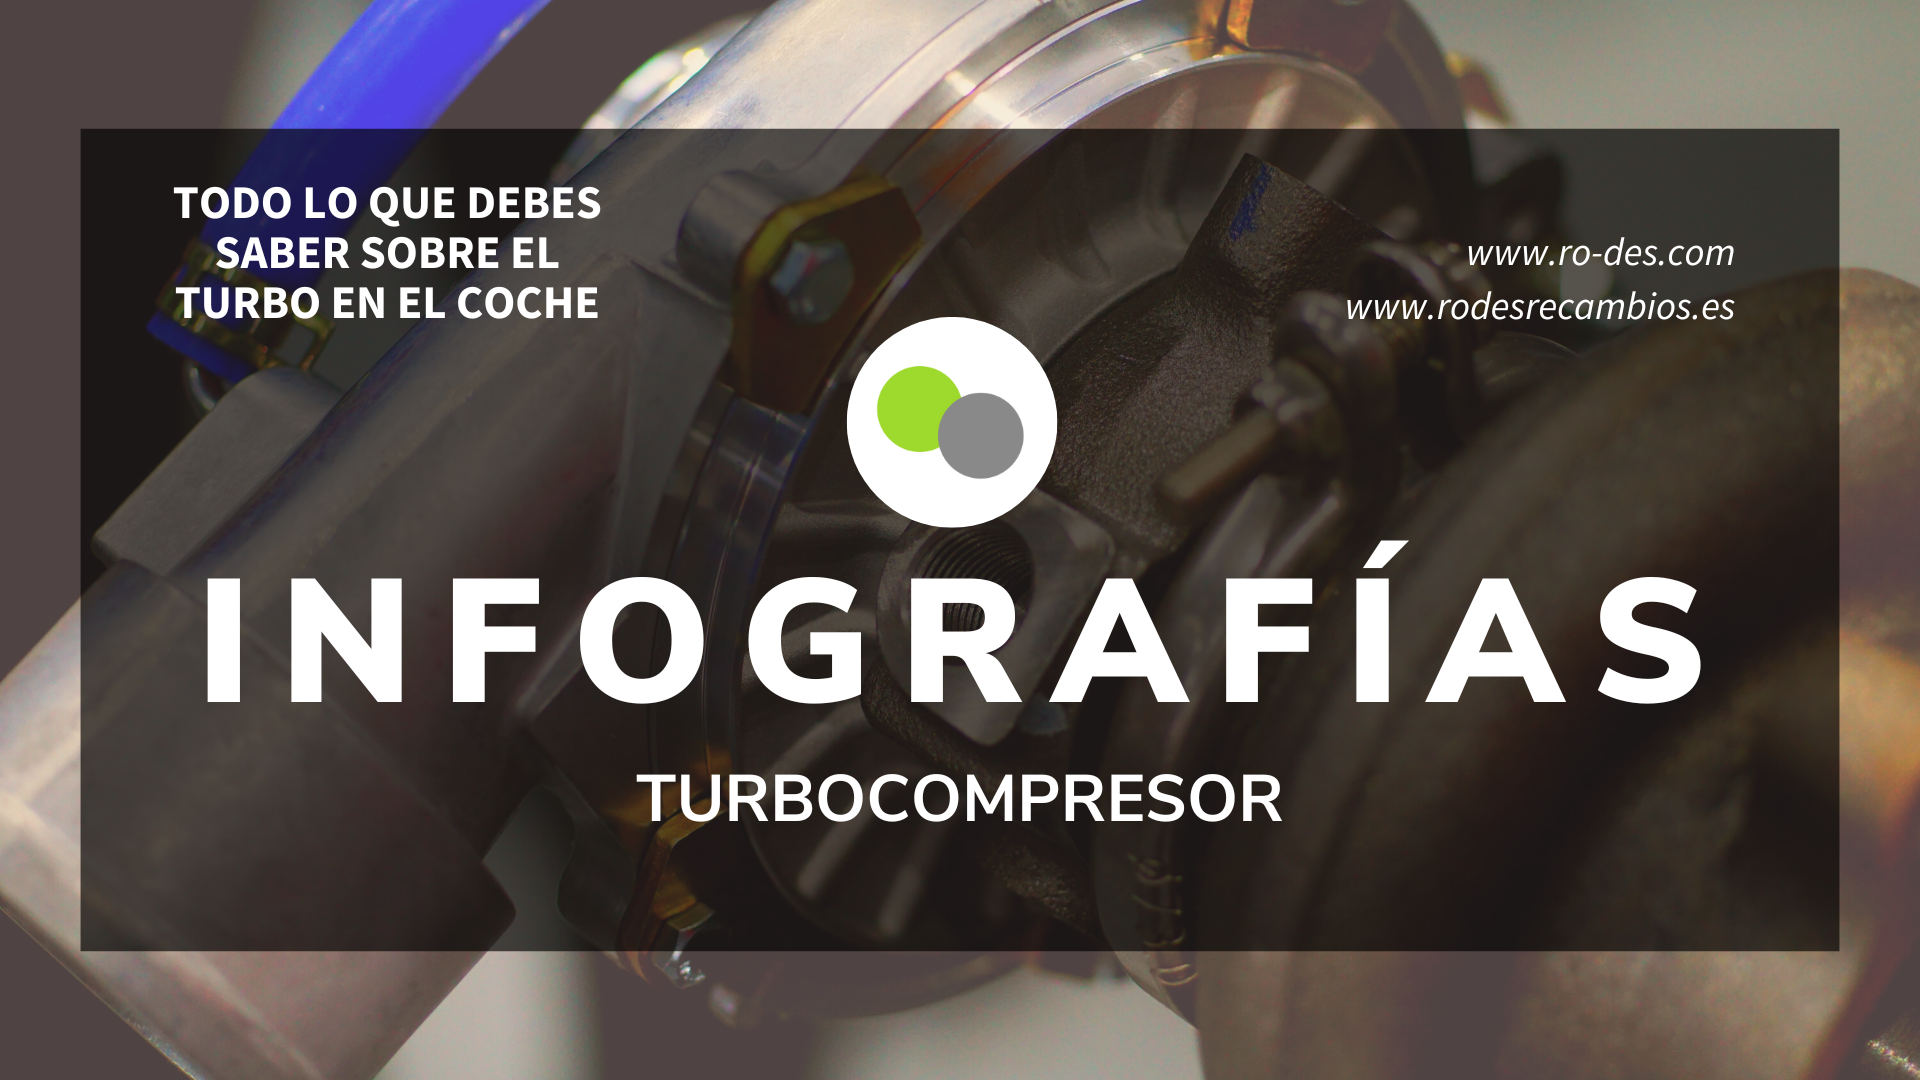 Infografías del turbocompresor